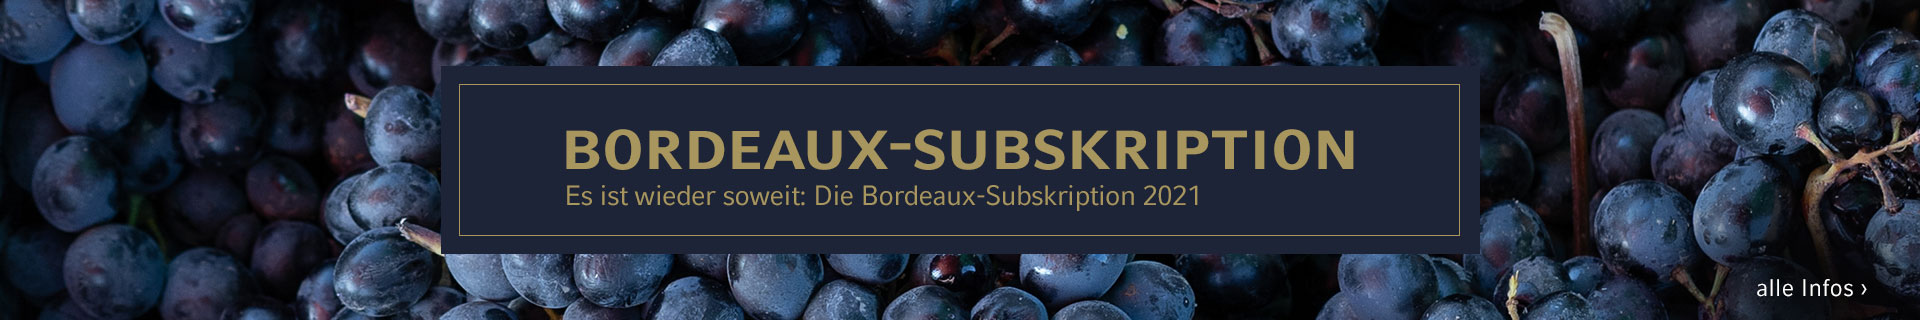 Bordeaux Subskription 